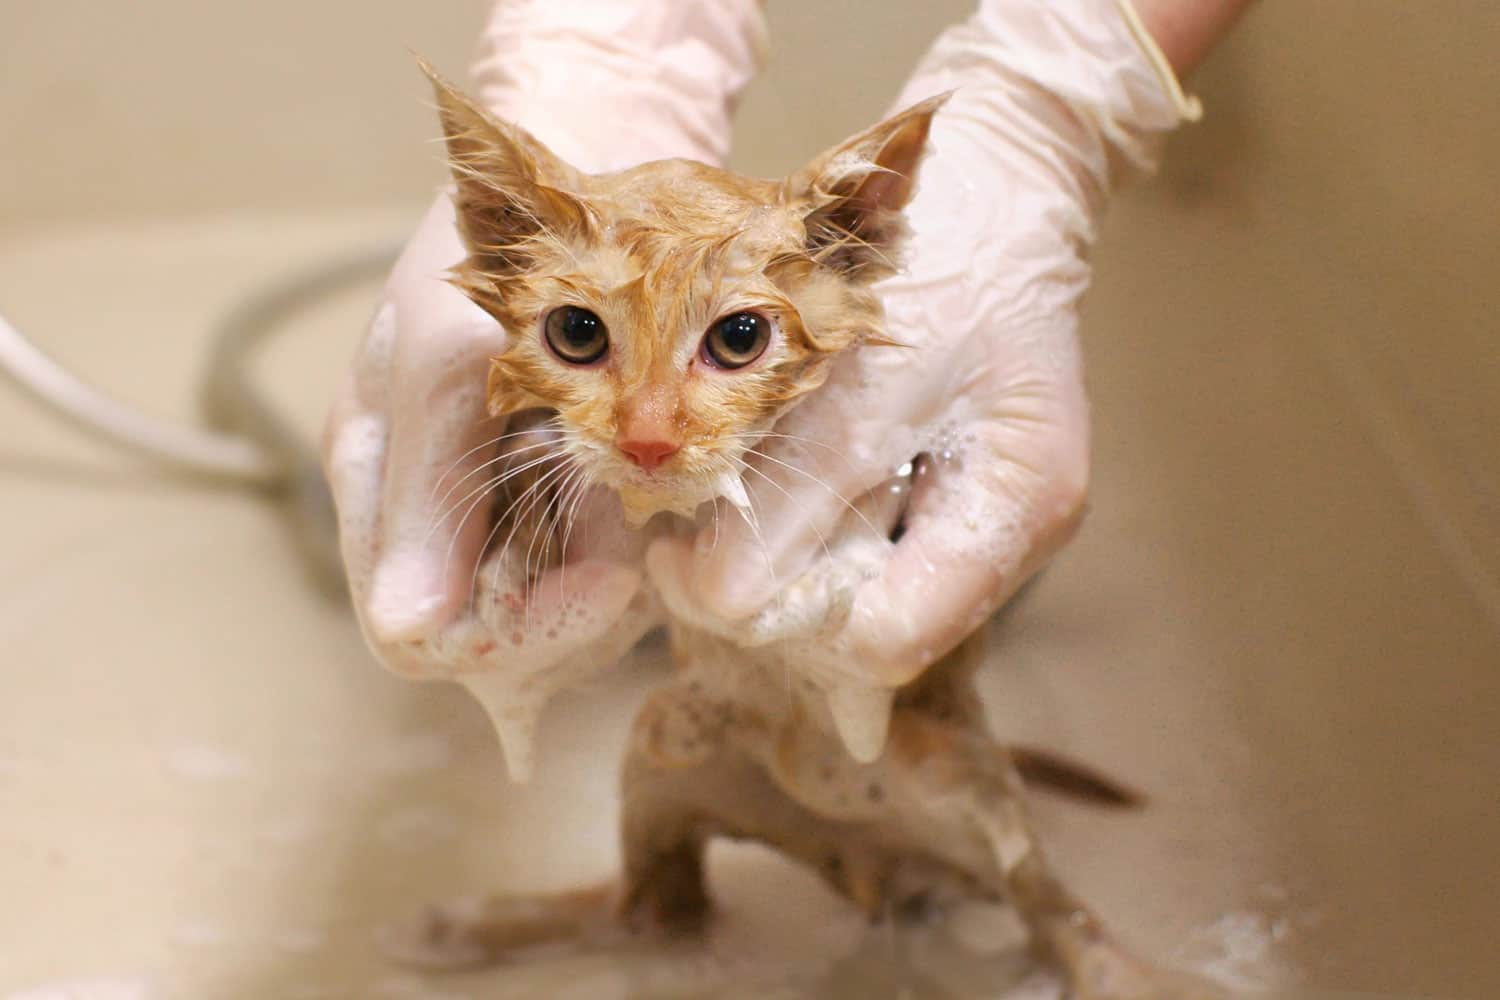 Bathing a little tabby cat